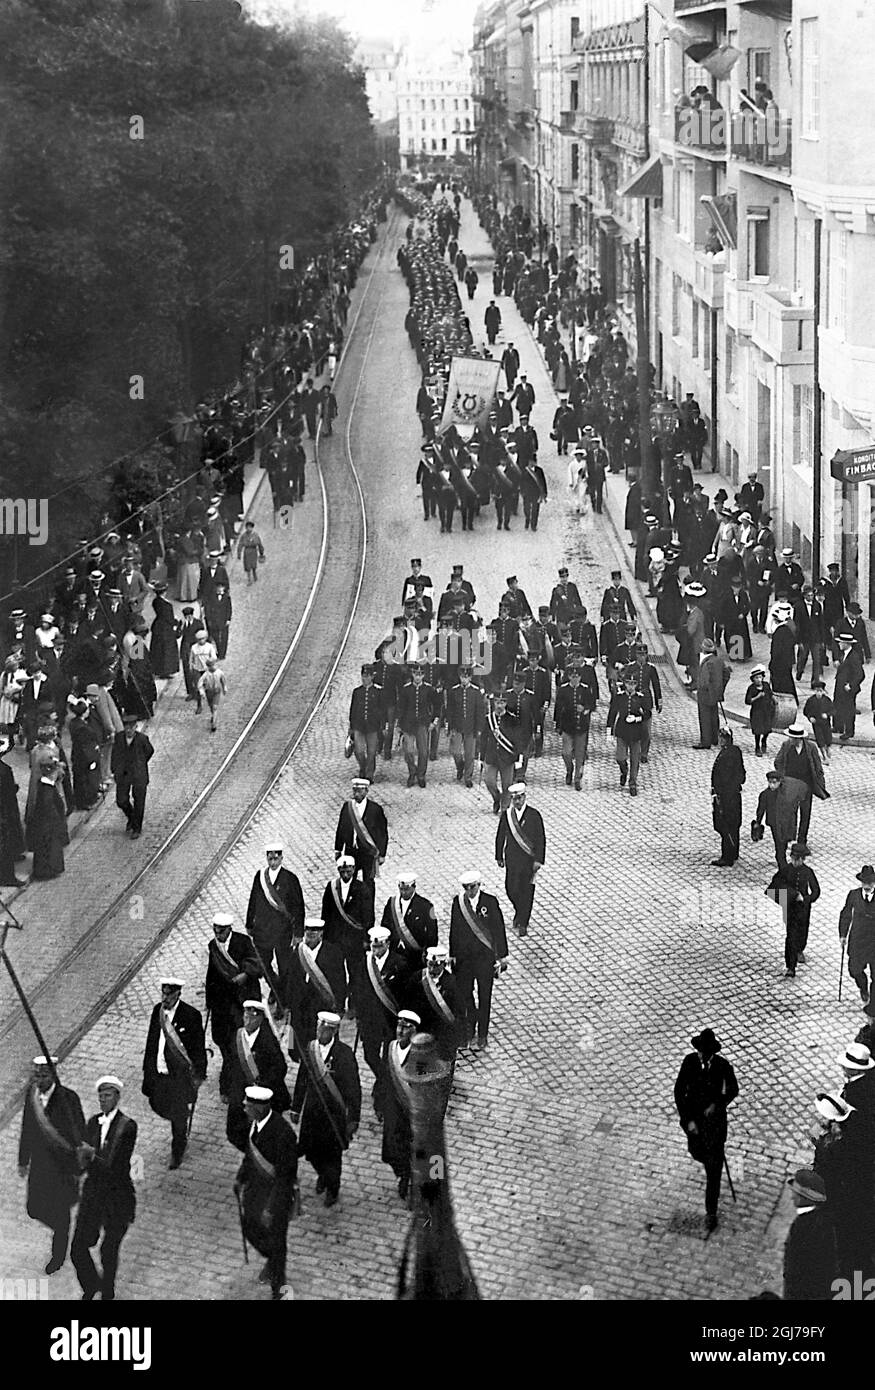 DOSSIER 1912 procession à l'ouverture des jeux olympiques de Stockholm 1912. Foto:Scanpix Historique/ Kod:1900 Scanpix SUÈDE Banque D'Images